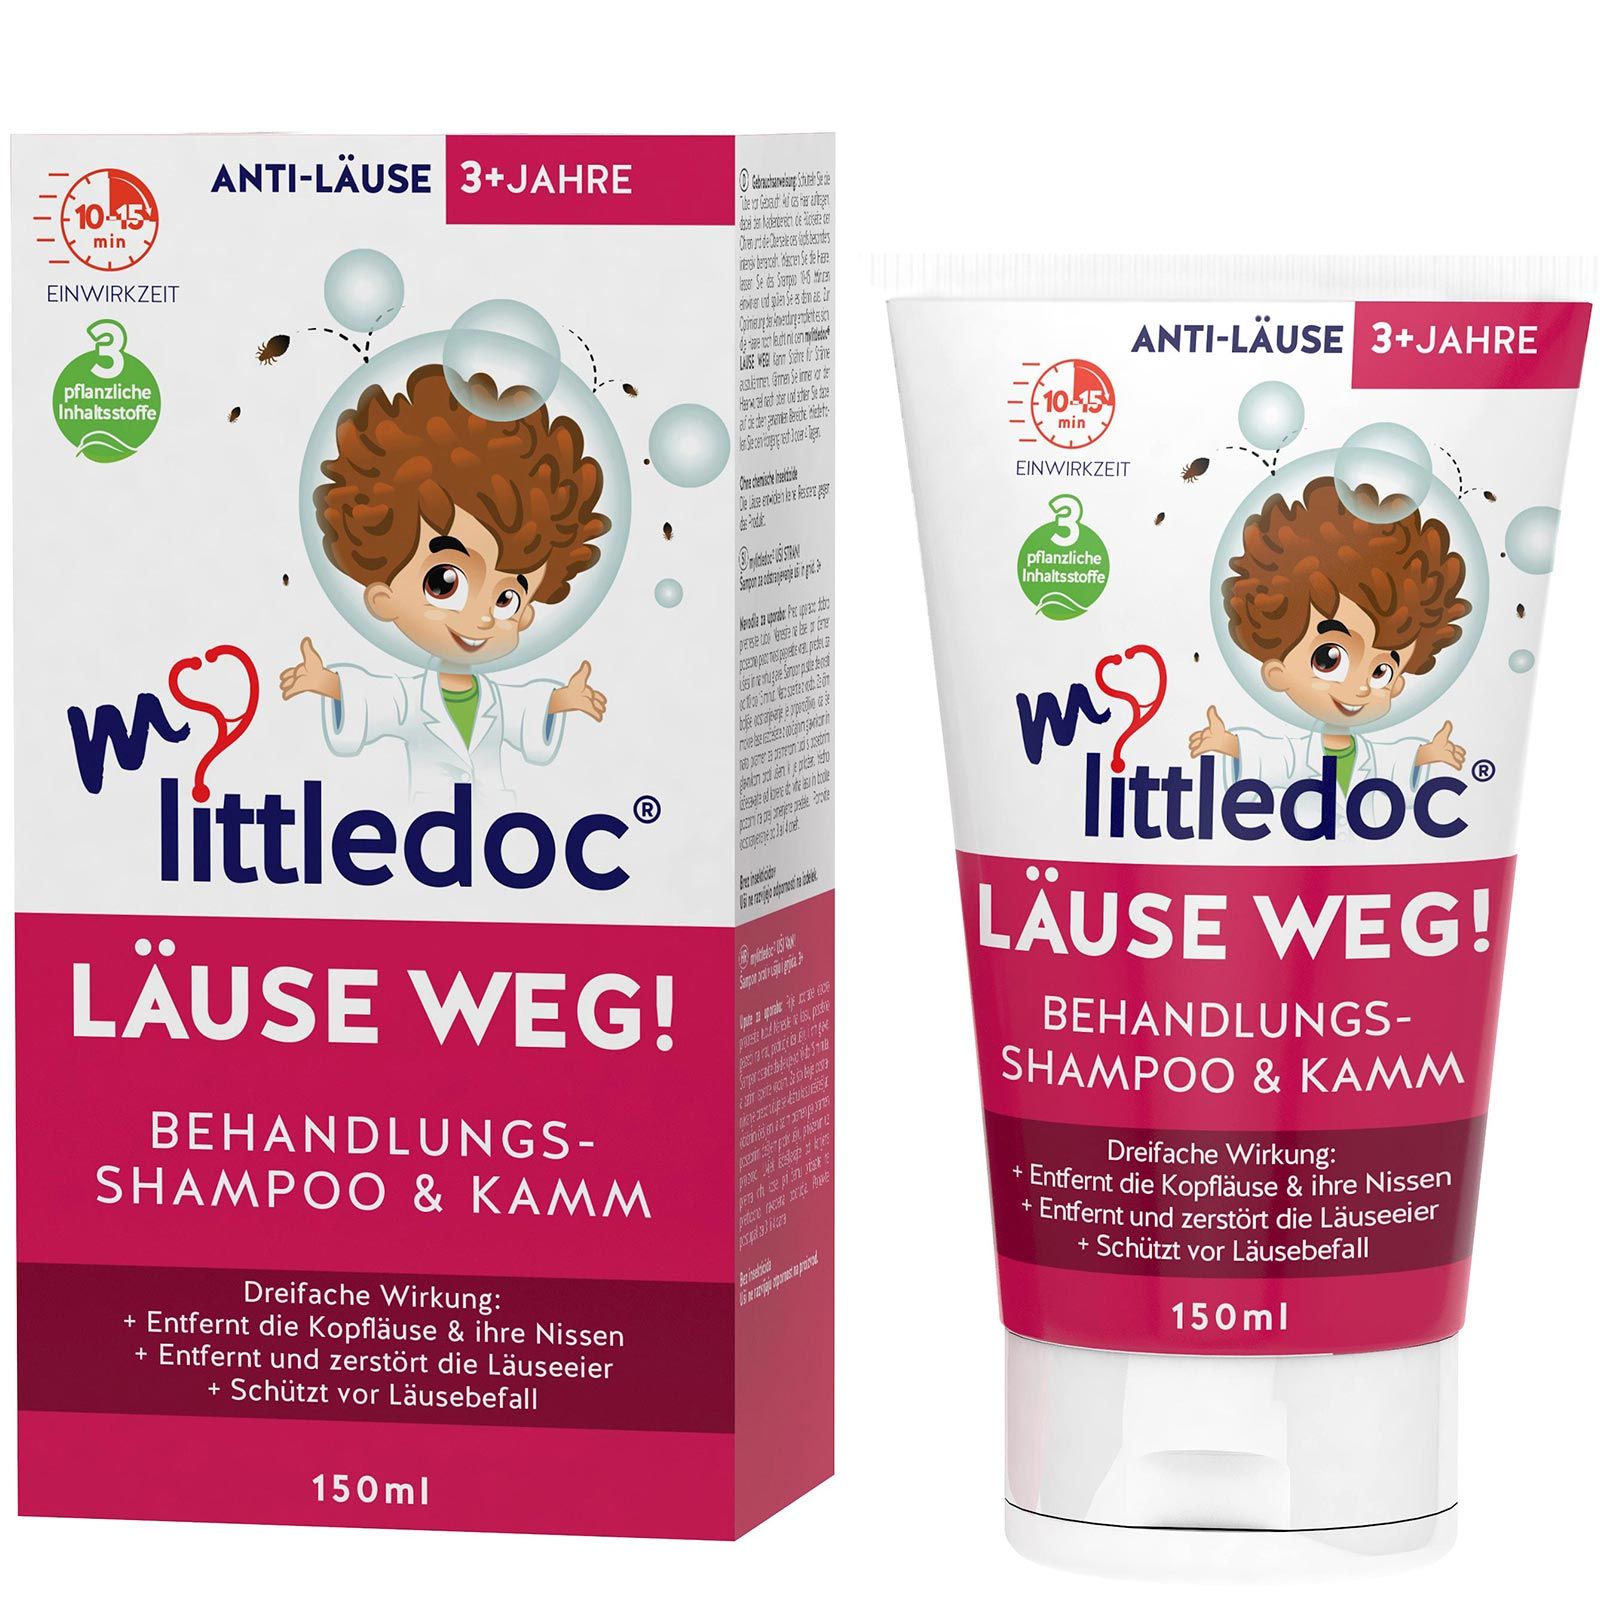 mylittle Doc Läuse Weg! Shampoo und Kamm